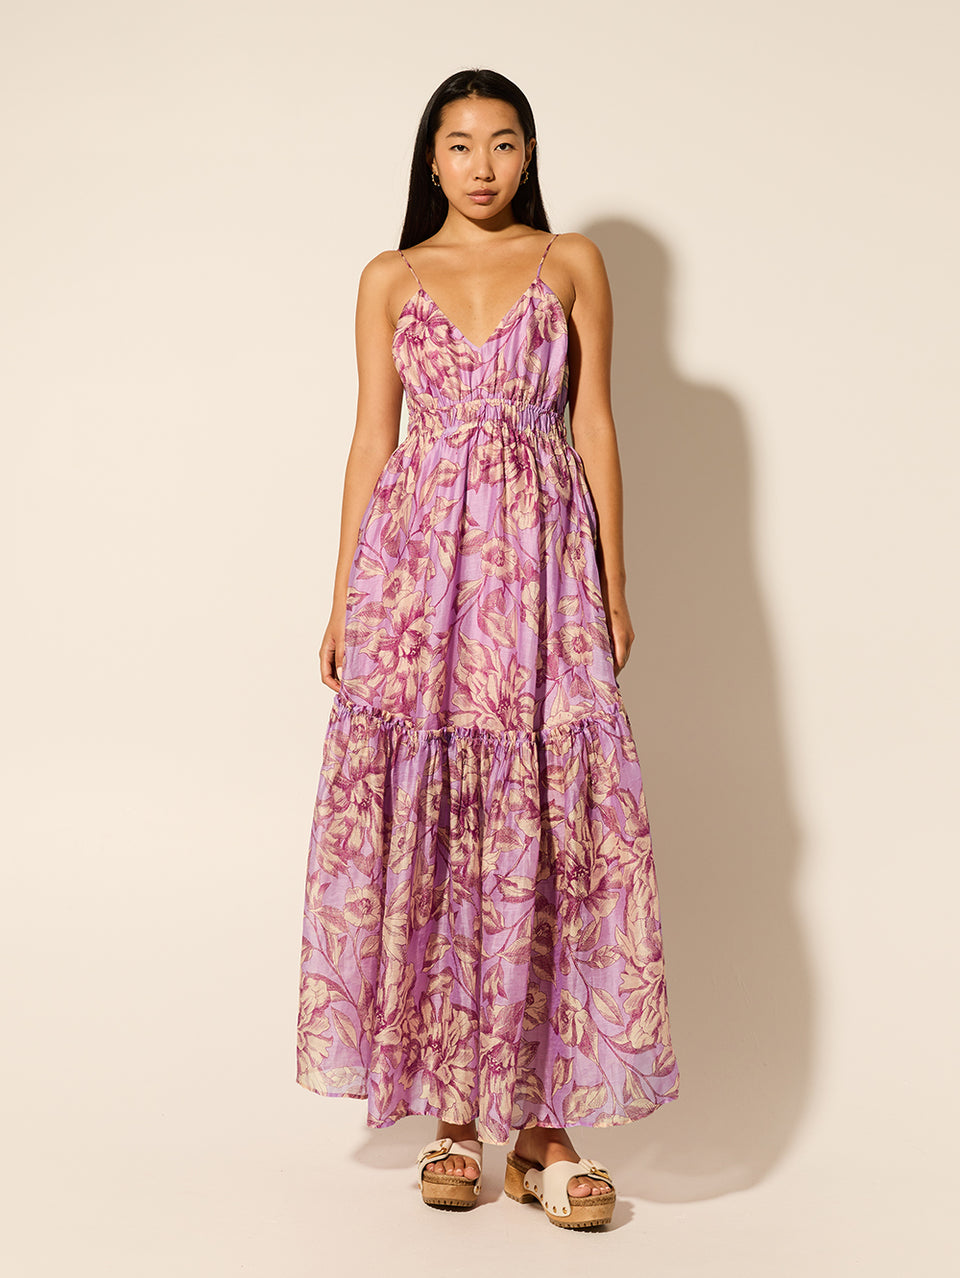 Reyna Maxi Dress KIVARI | Model wears purple floral maxi dress